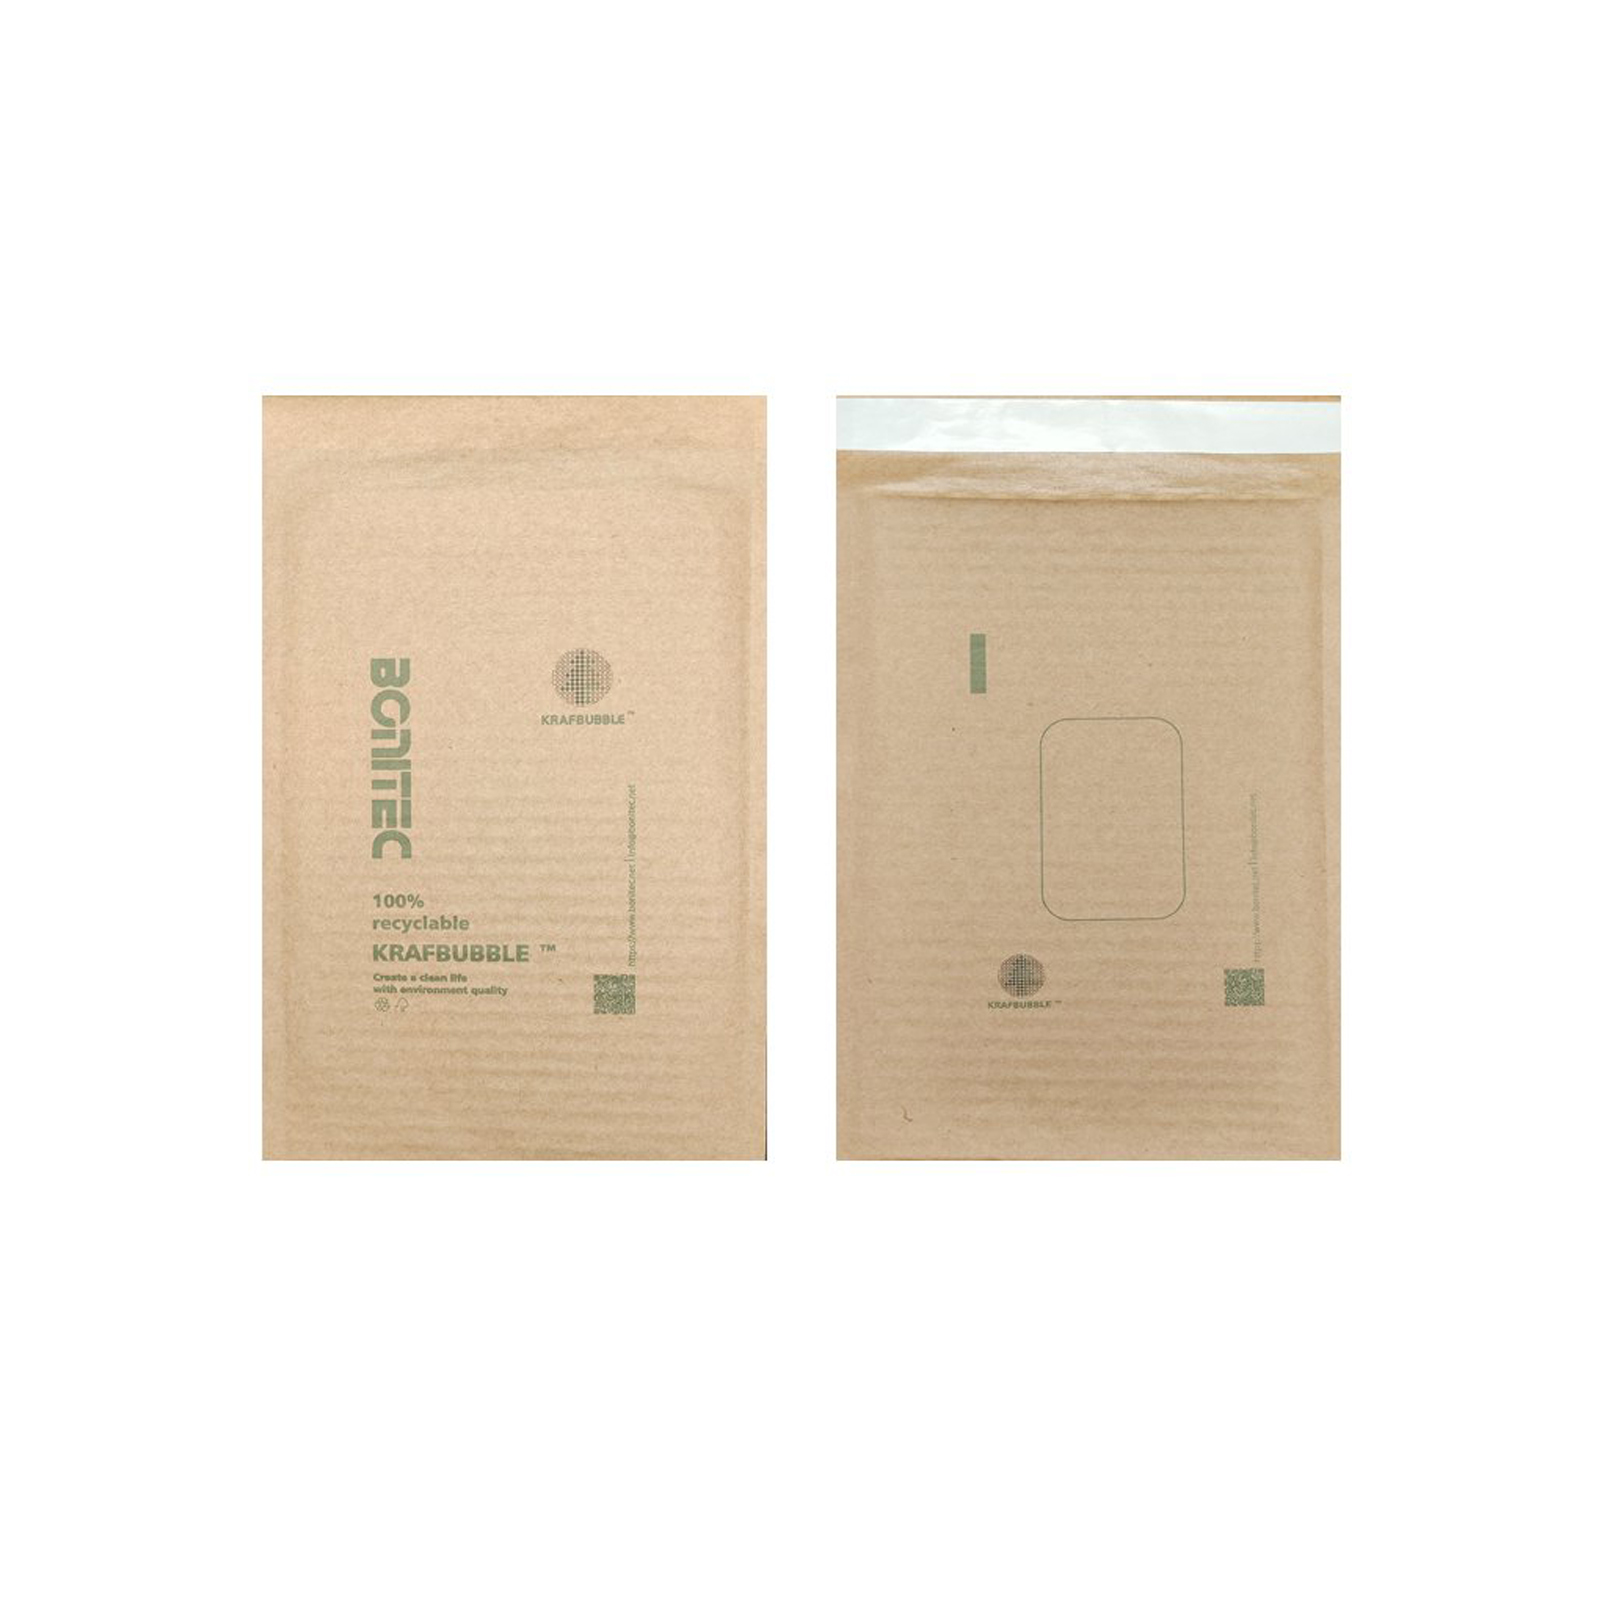 Anuncio publicitario KRAFBUBBLE marrón-mediano de 2 capas 200 piezas (200 mm × 380 mm / 7.87 '' × 14.96 '')